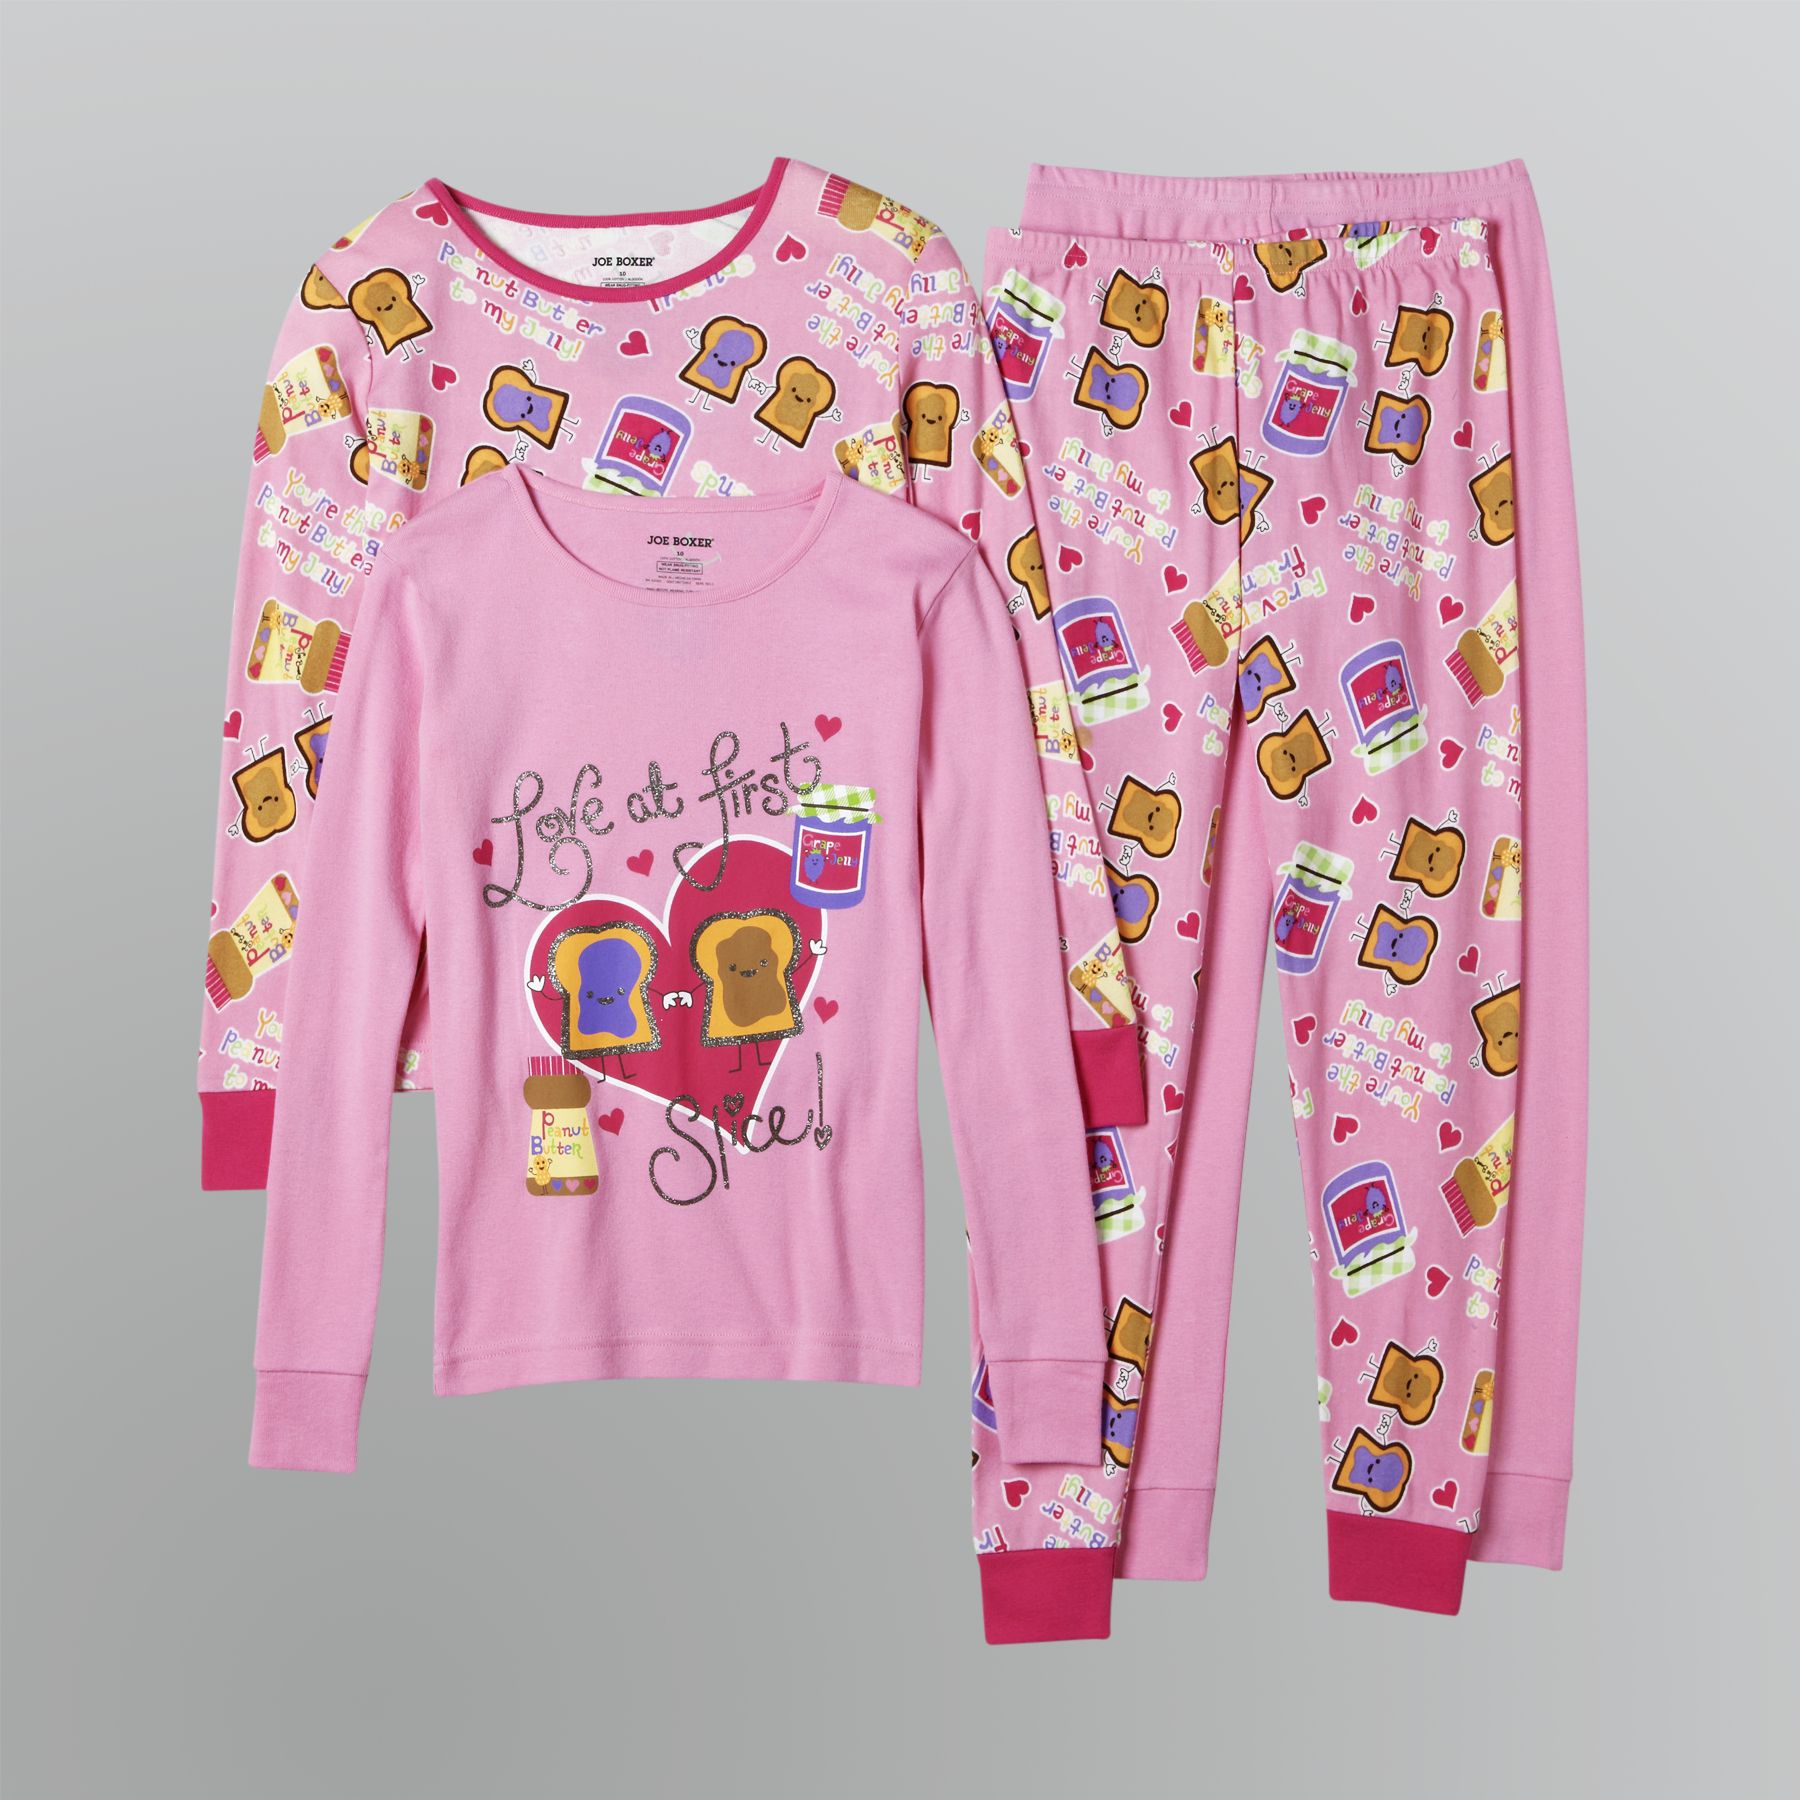 Joe Boxer Girl's Pajama Set 2 Pair